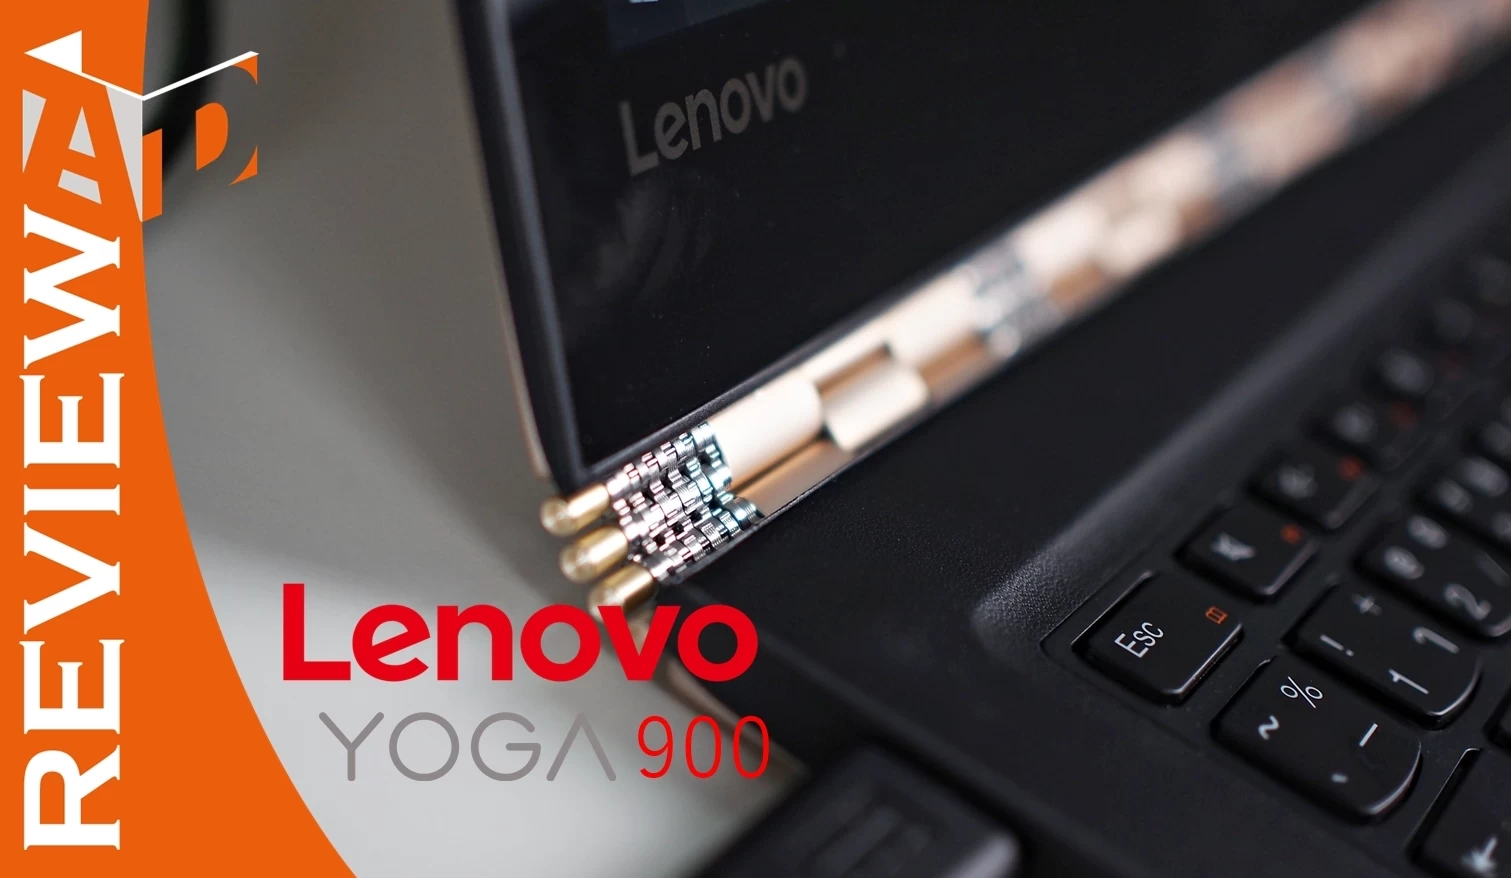 review Lenovo yoga 900 | Lenovo | มินิรีวิว Lenovo Yoga 900 อัลตร้าบุ๊คระดับสูง  หรู แรง แพงสมค่าตัว